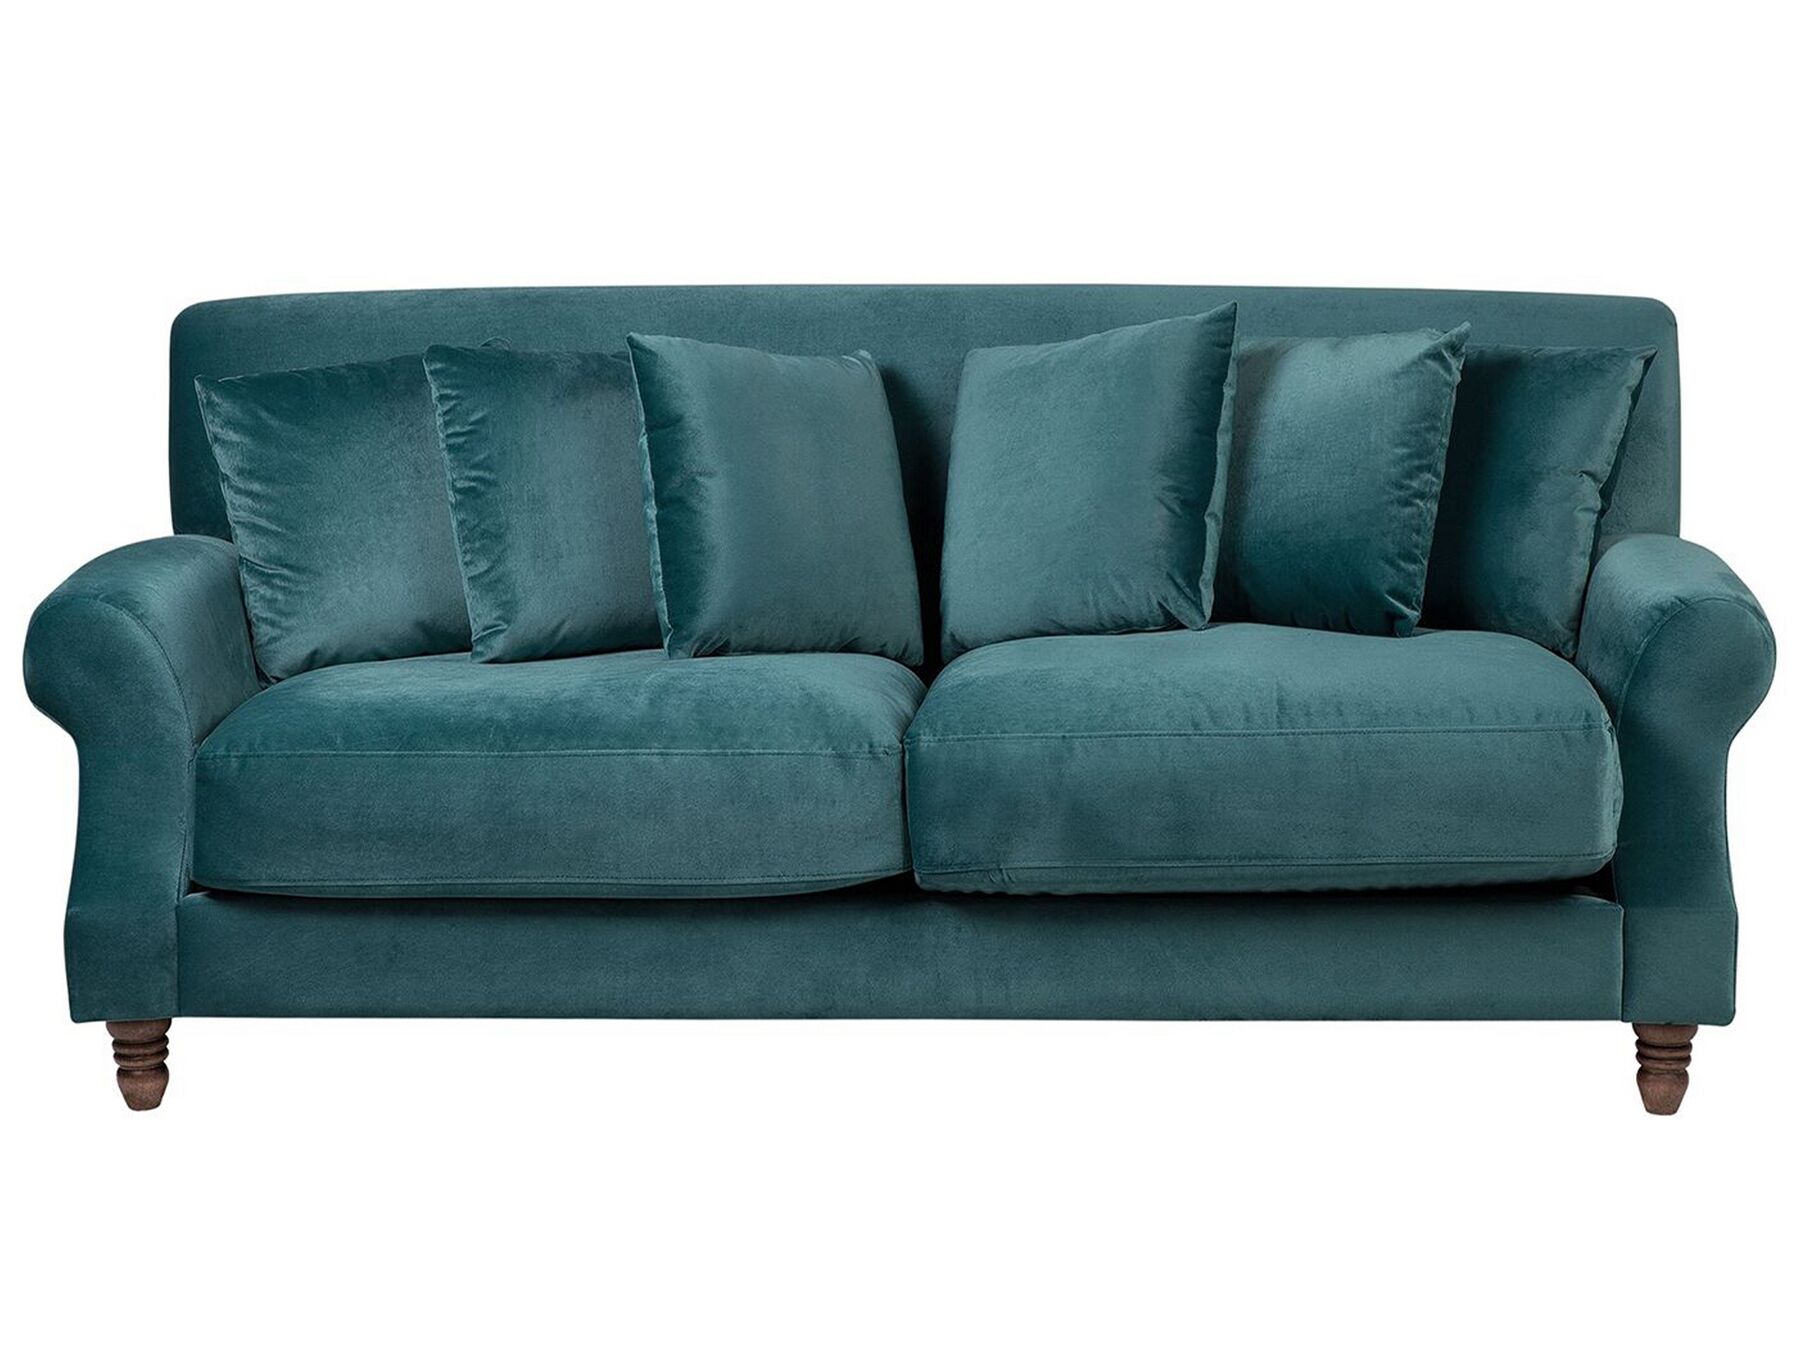 dark teal sofa bed